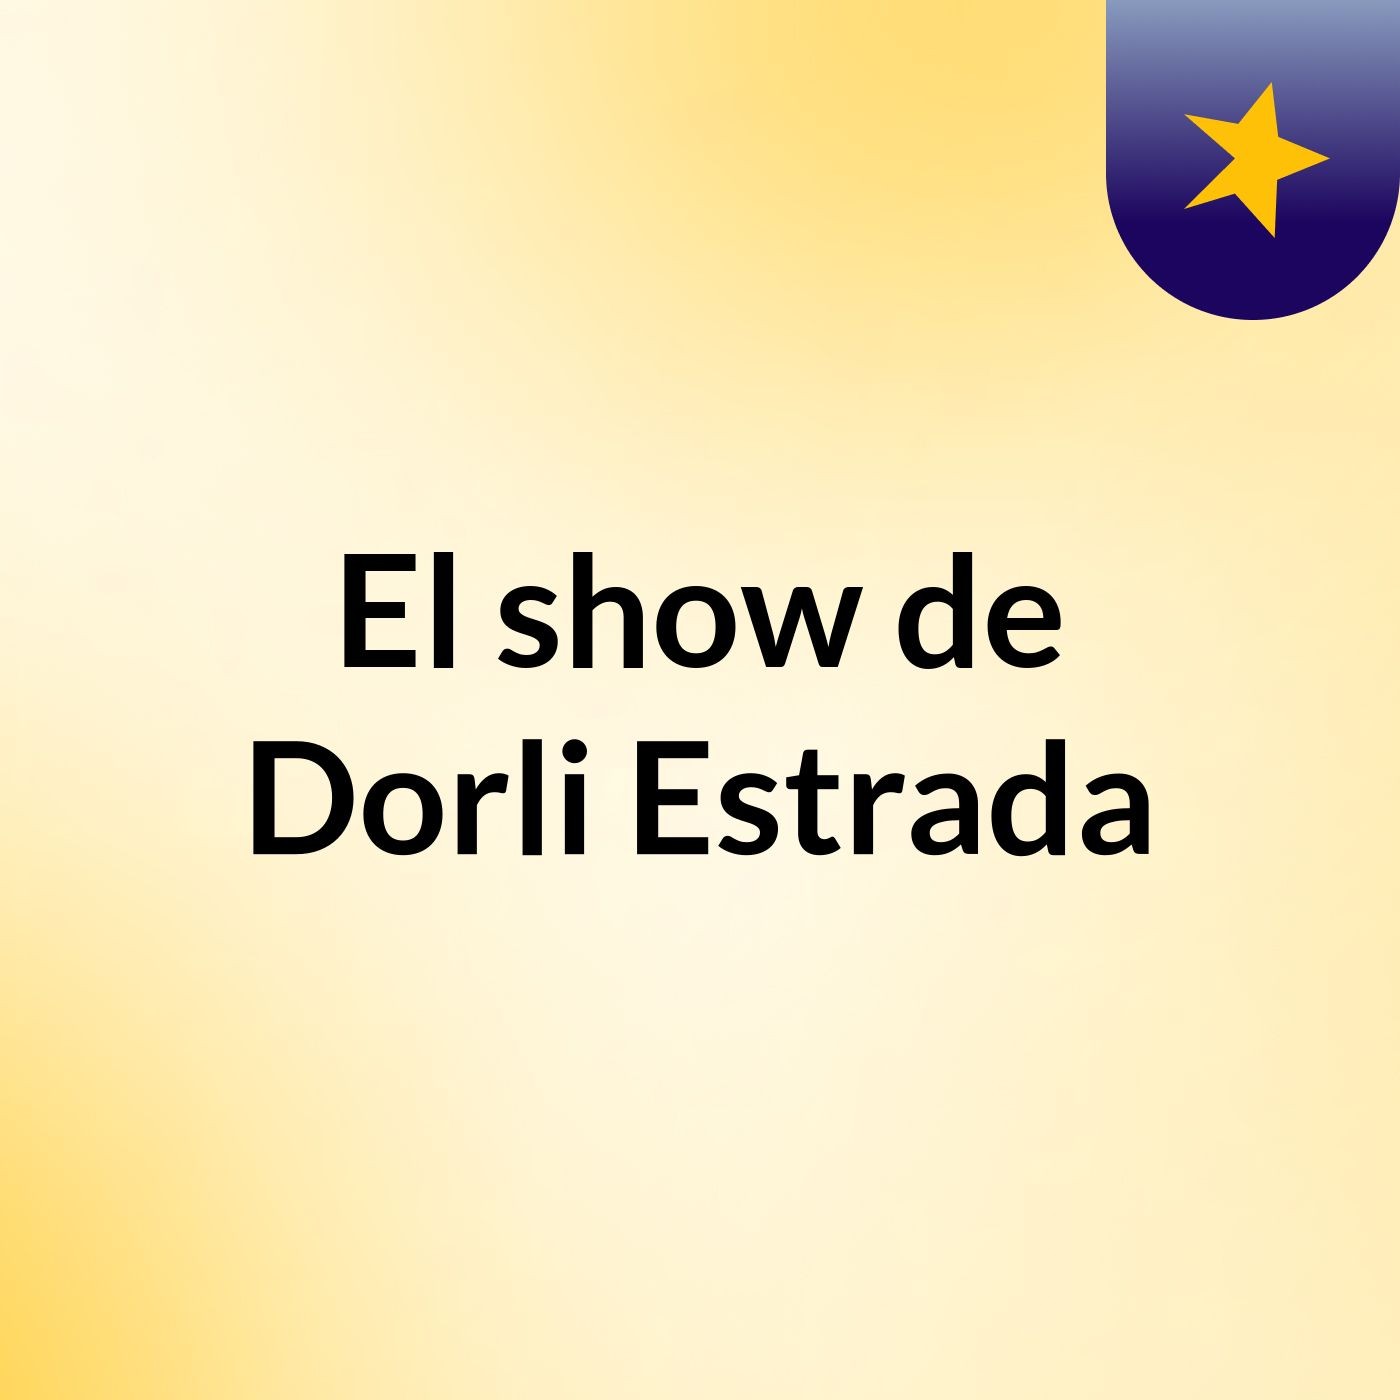 El show de Dorli Estrada